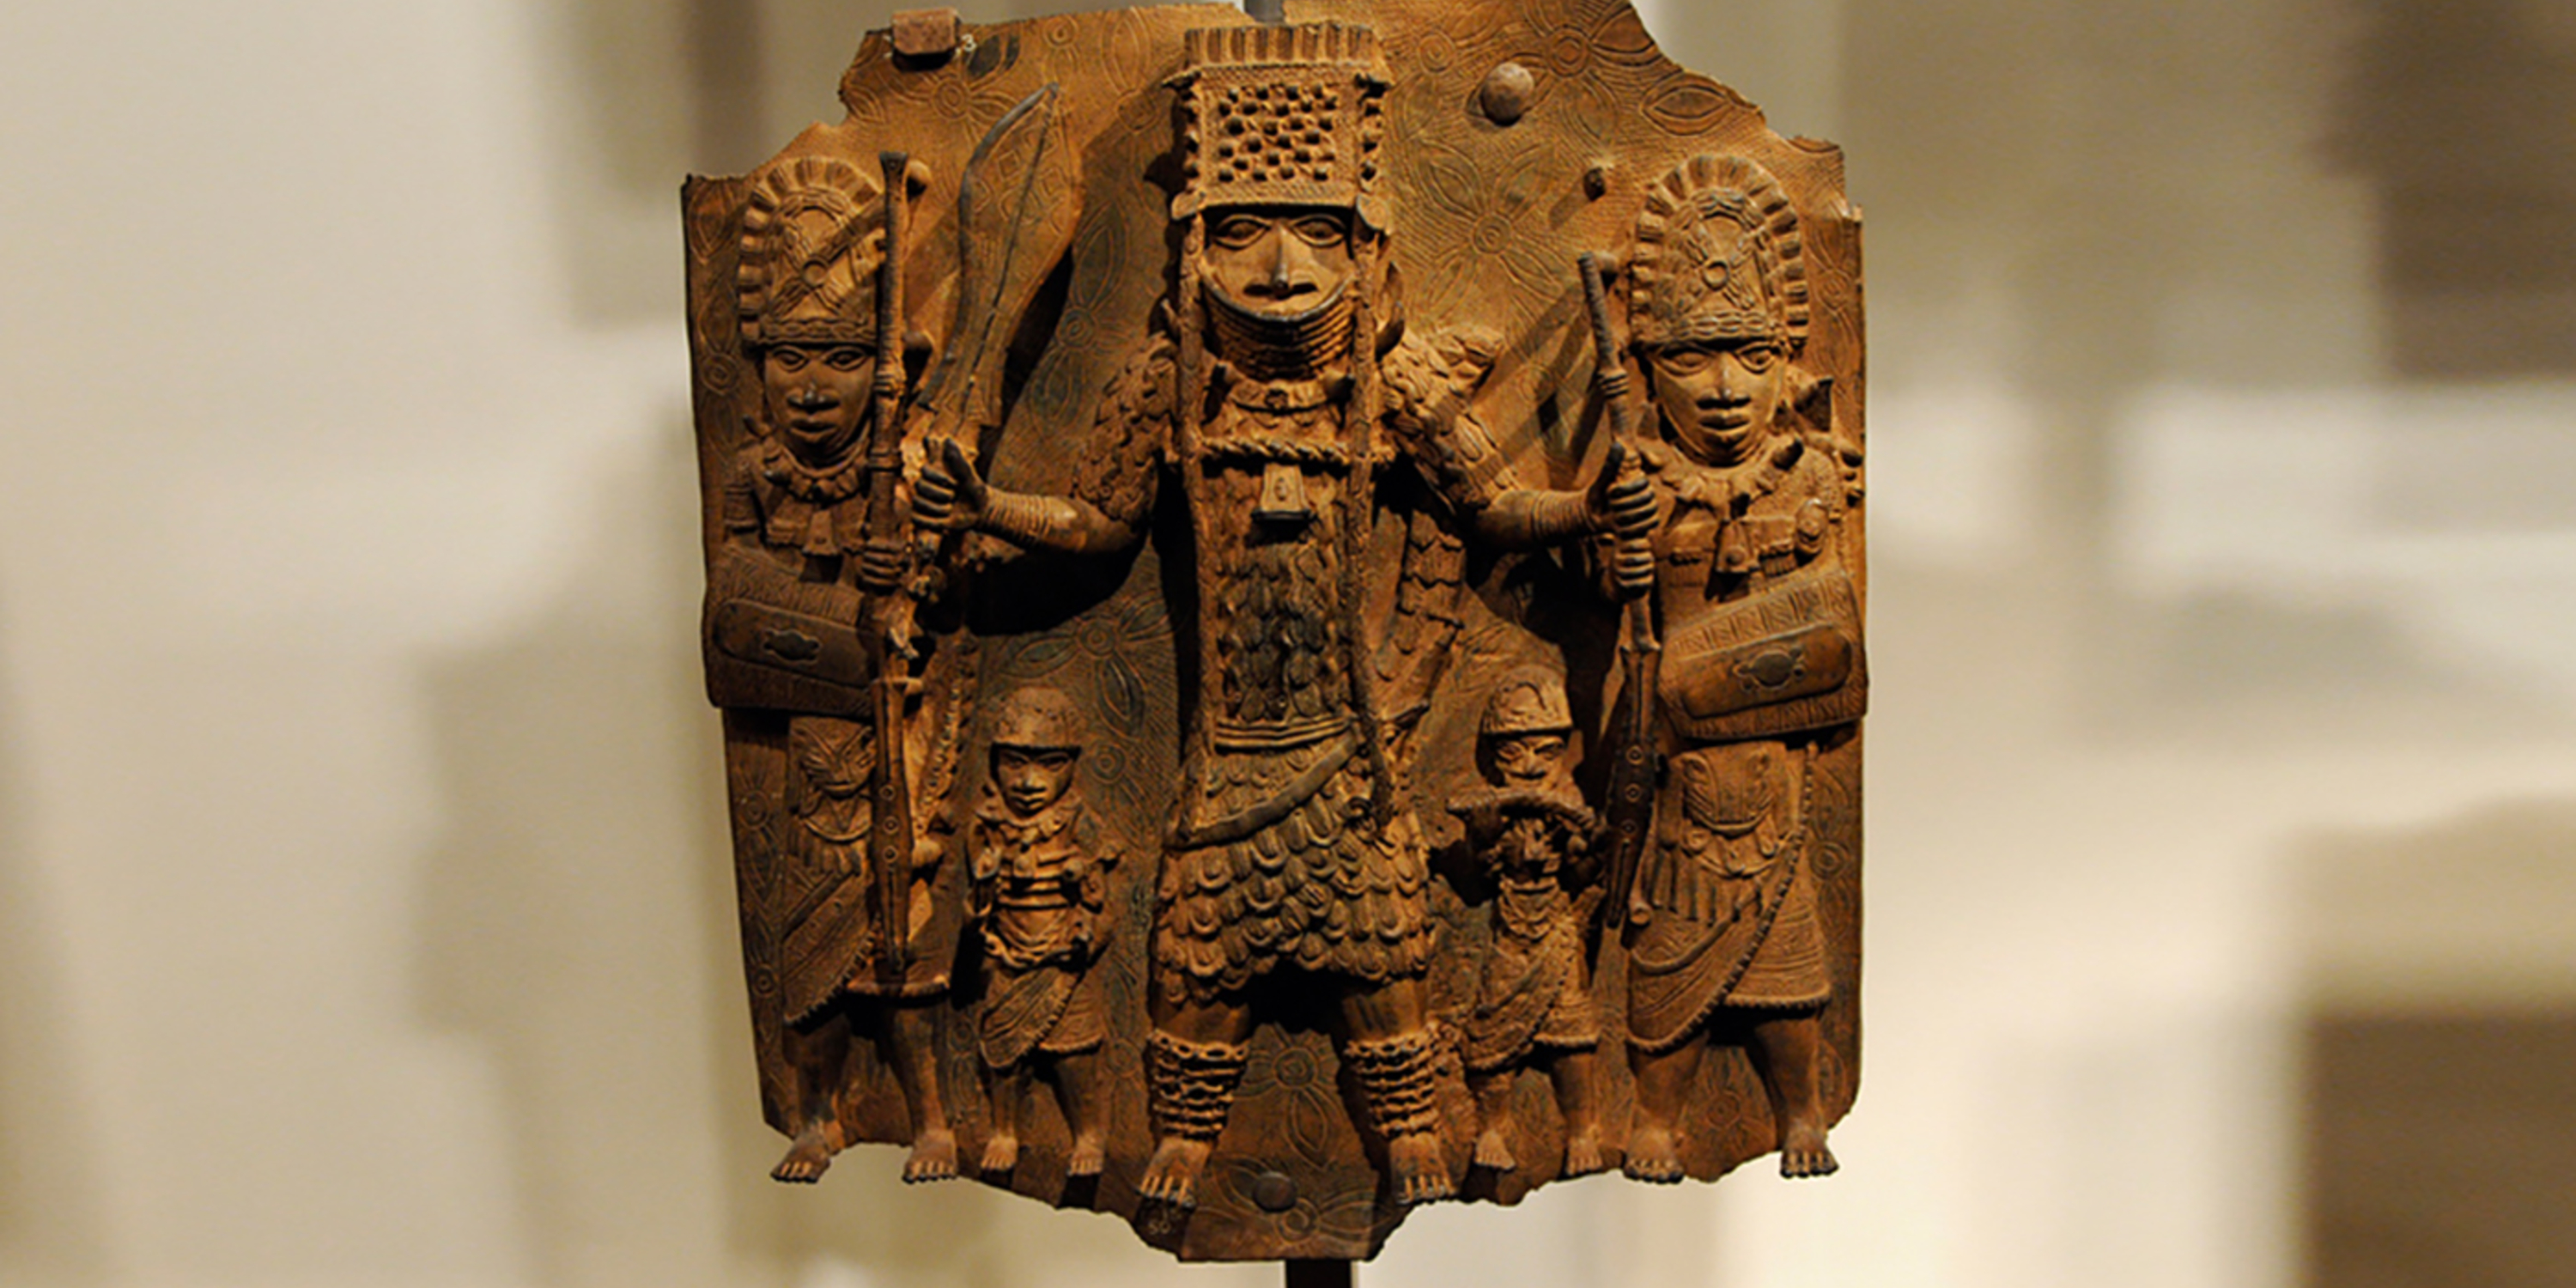 Artifact from Benin